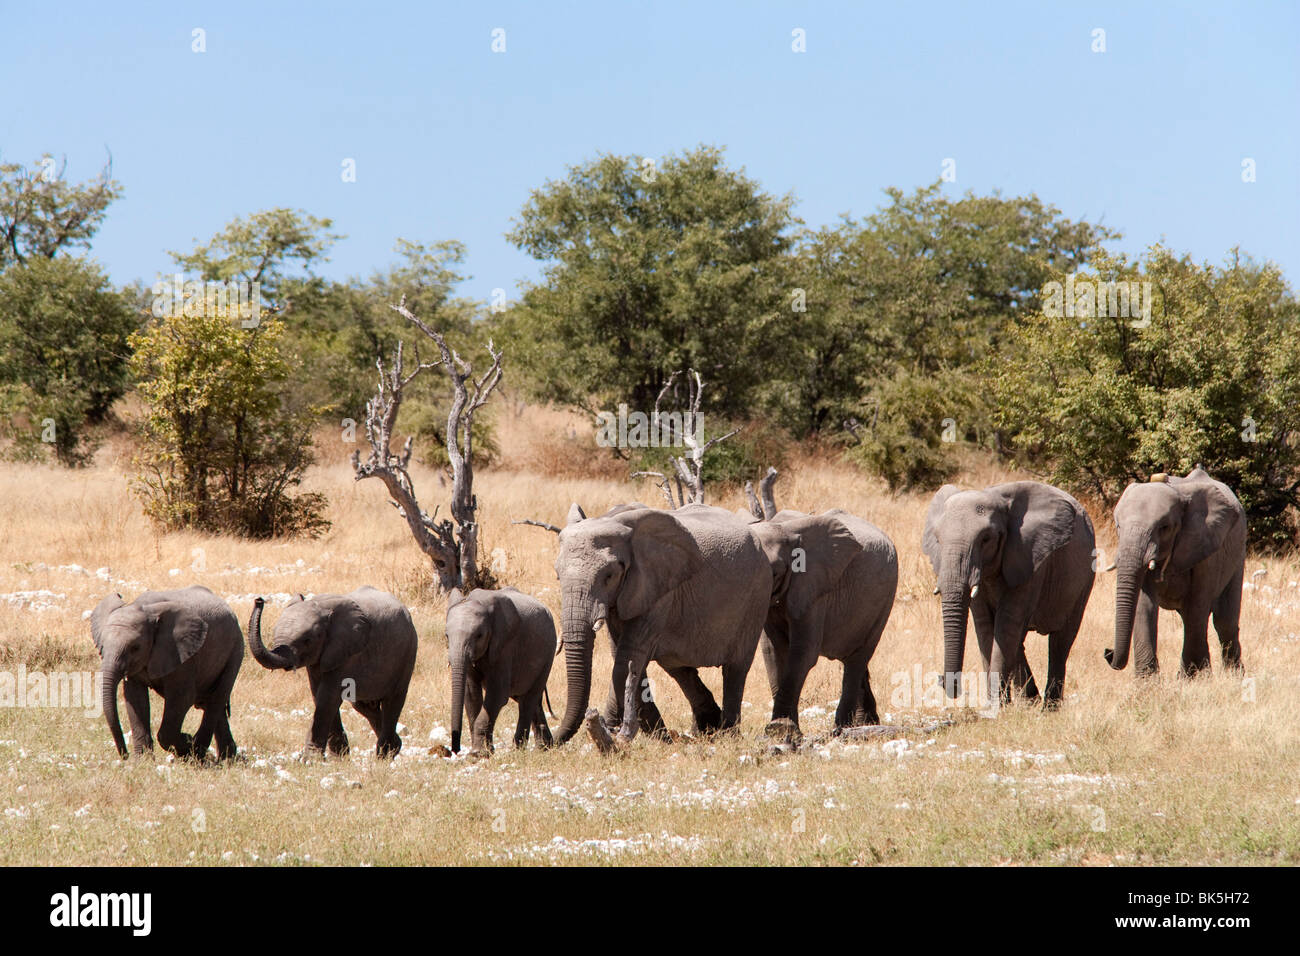 African elephants (Loxodonta africana), Etosha National Park, Namibia, Africa Stock Photo